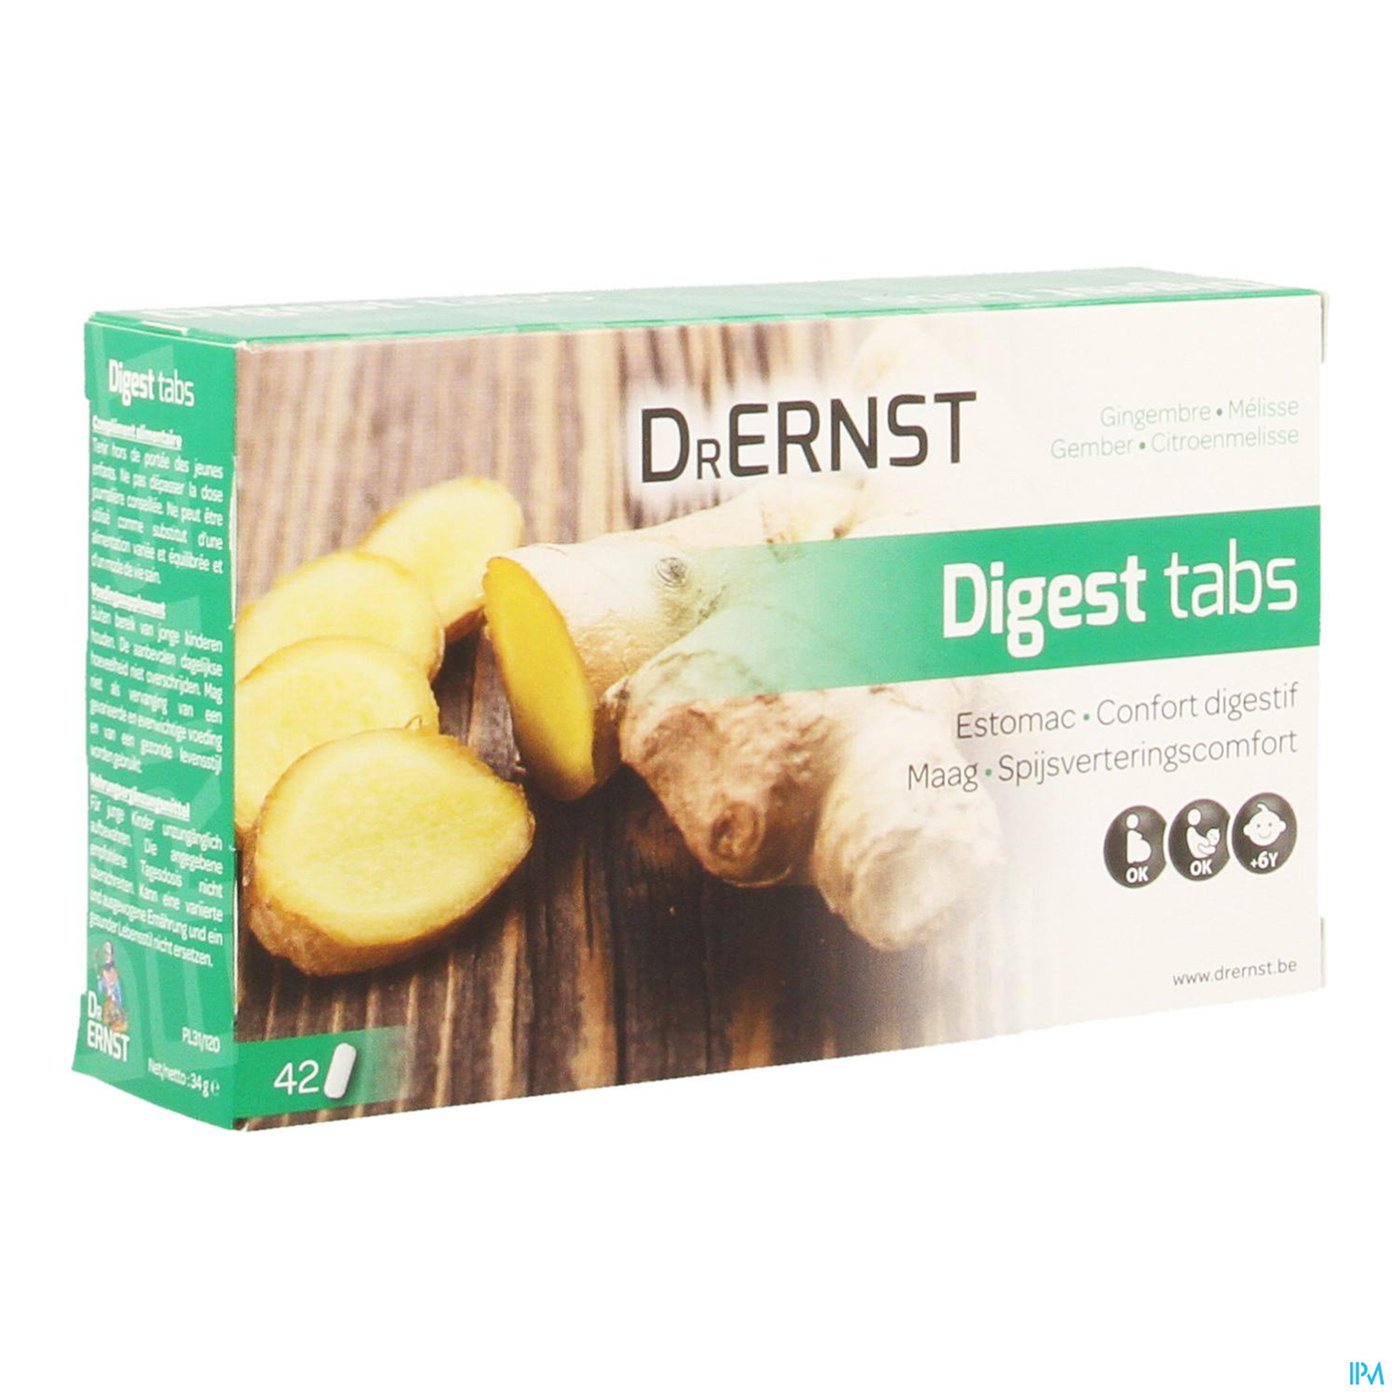 Dr Ernst Digest tabs 42 Tabl packshot